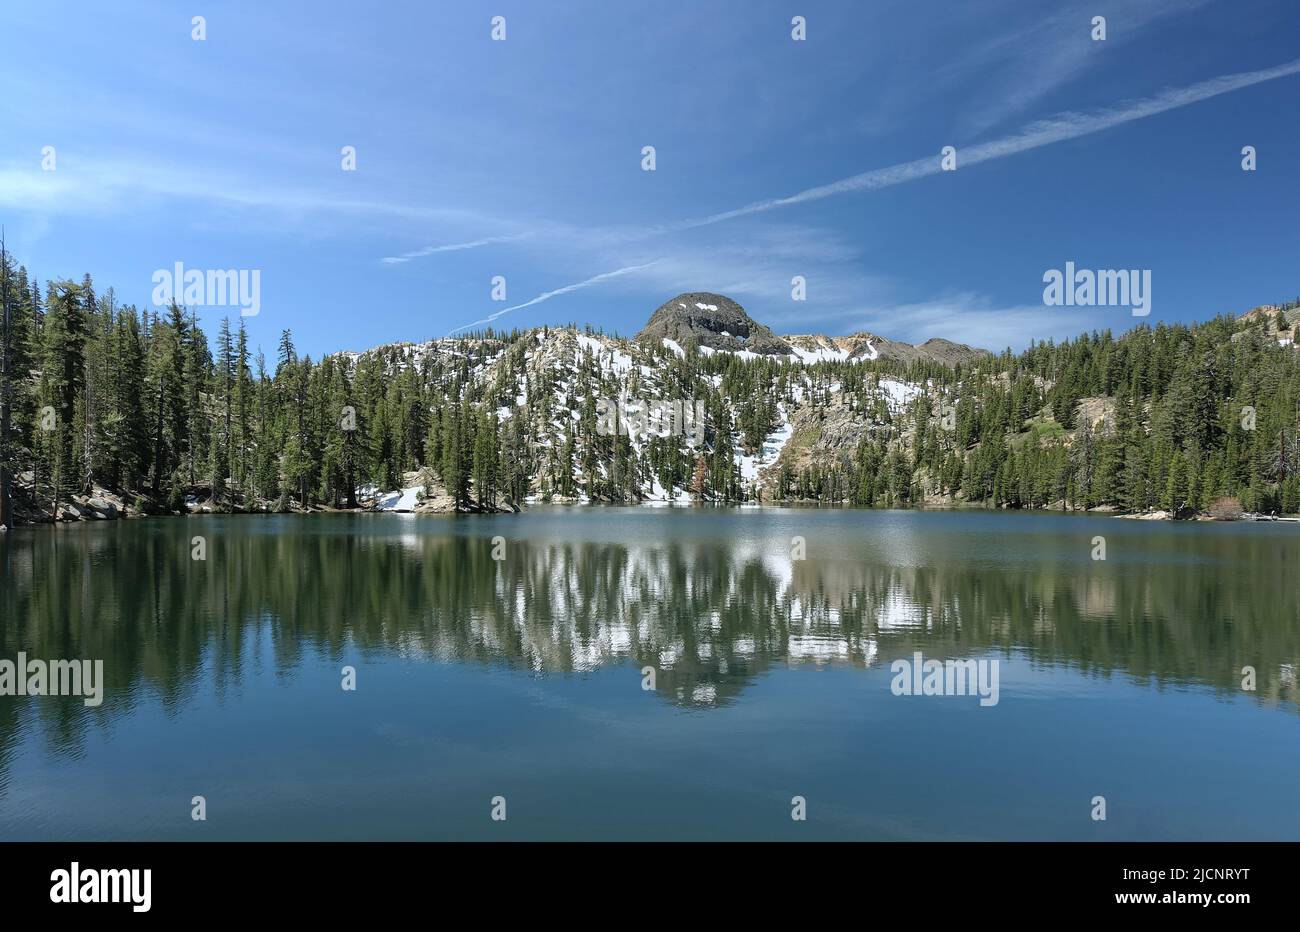 High Sierra Mountains près de Markleeville, Californie. Le lac Kinney, le lac alpin et le pic d'Ebbbbbbets sont illustrés. Banque D'Images